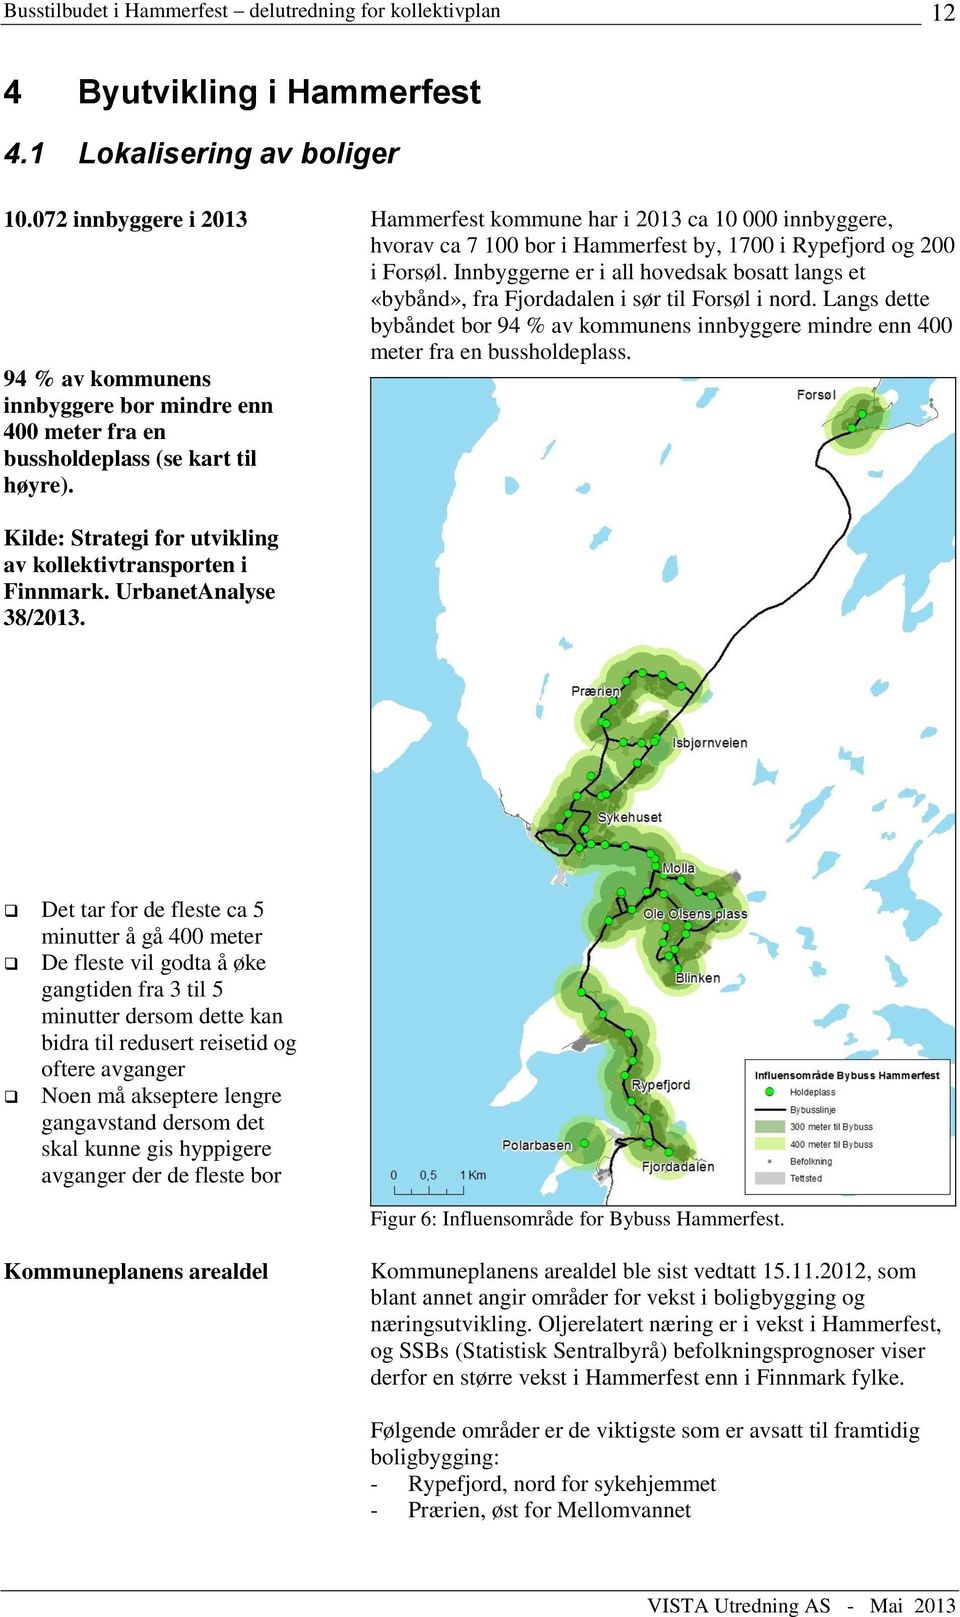 Innbyggerne er i all hovedsak bosatt langs et «bybånd», fra Fjordadalen i sør til Forsøl i nord. Langs dette bybåndet bor 94 % av kommunens innbyggere mindre enn 400 meter fra en bussholdeplass.